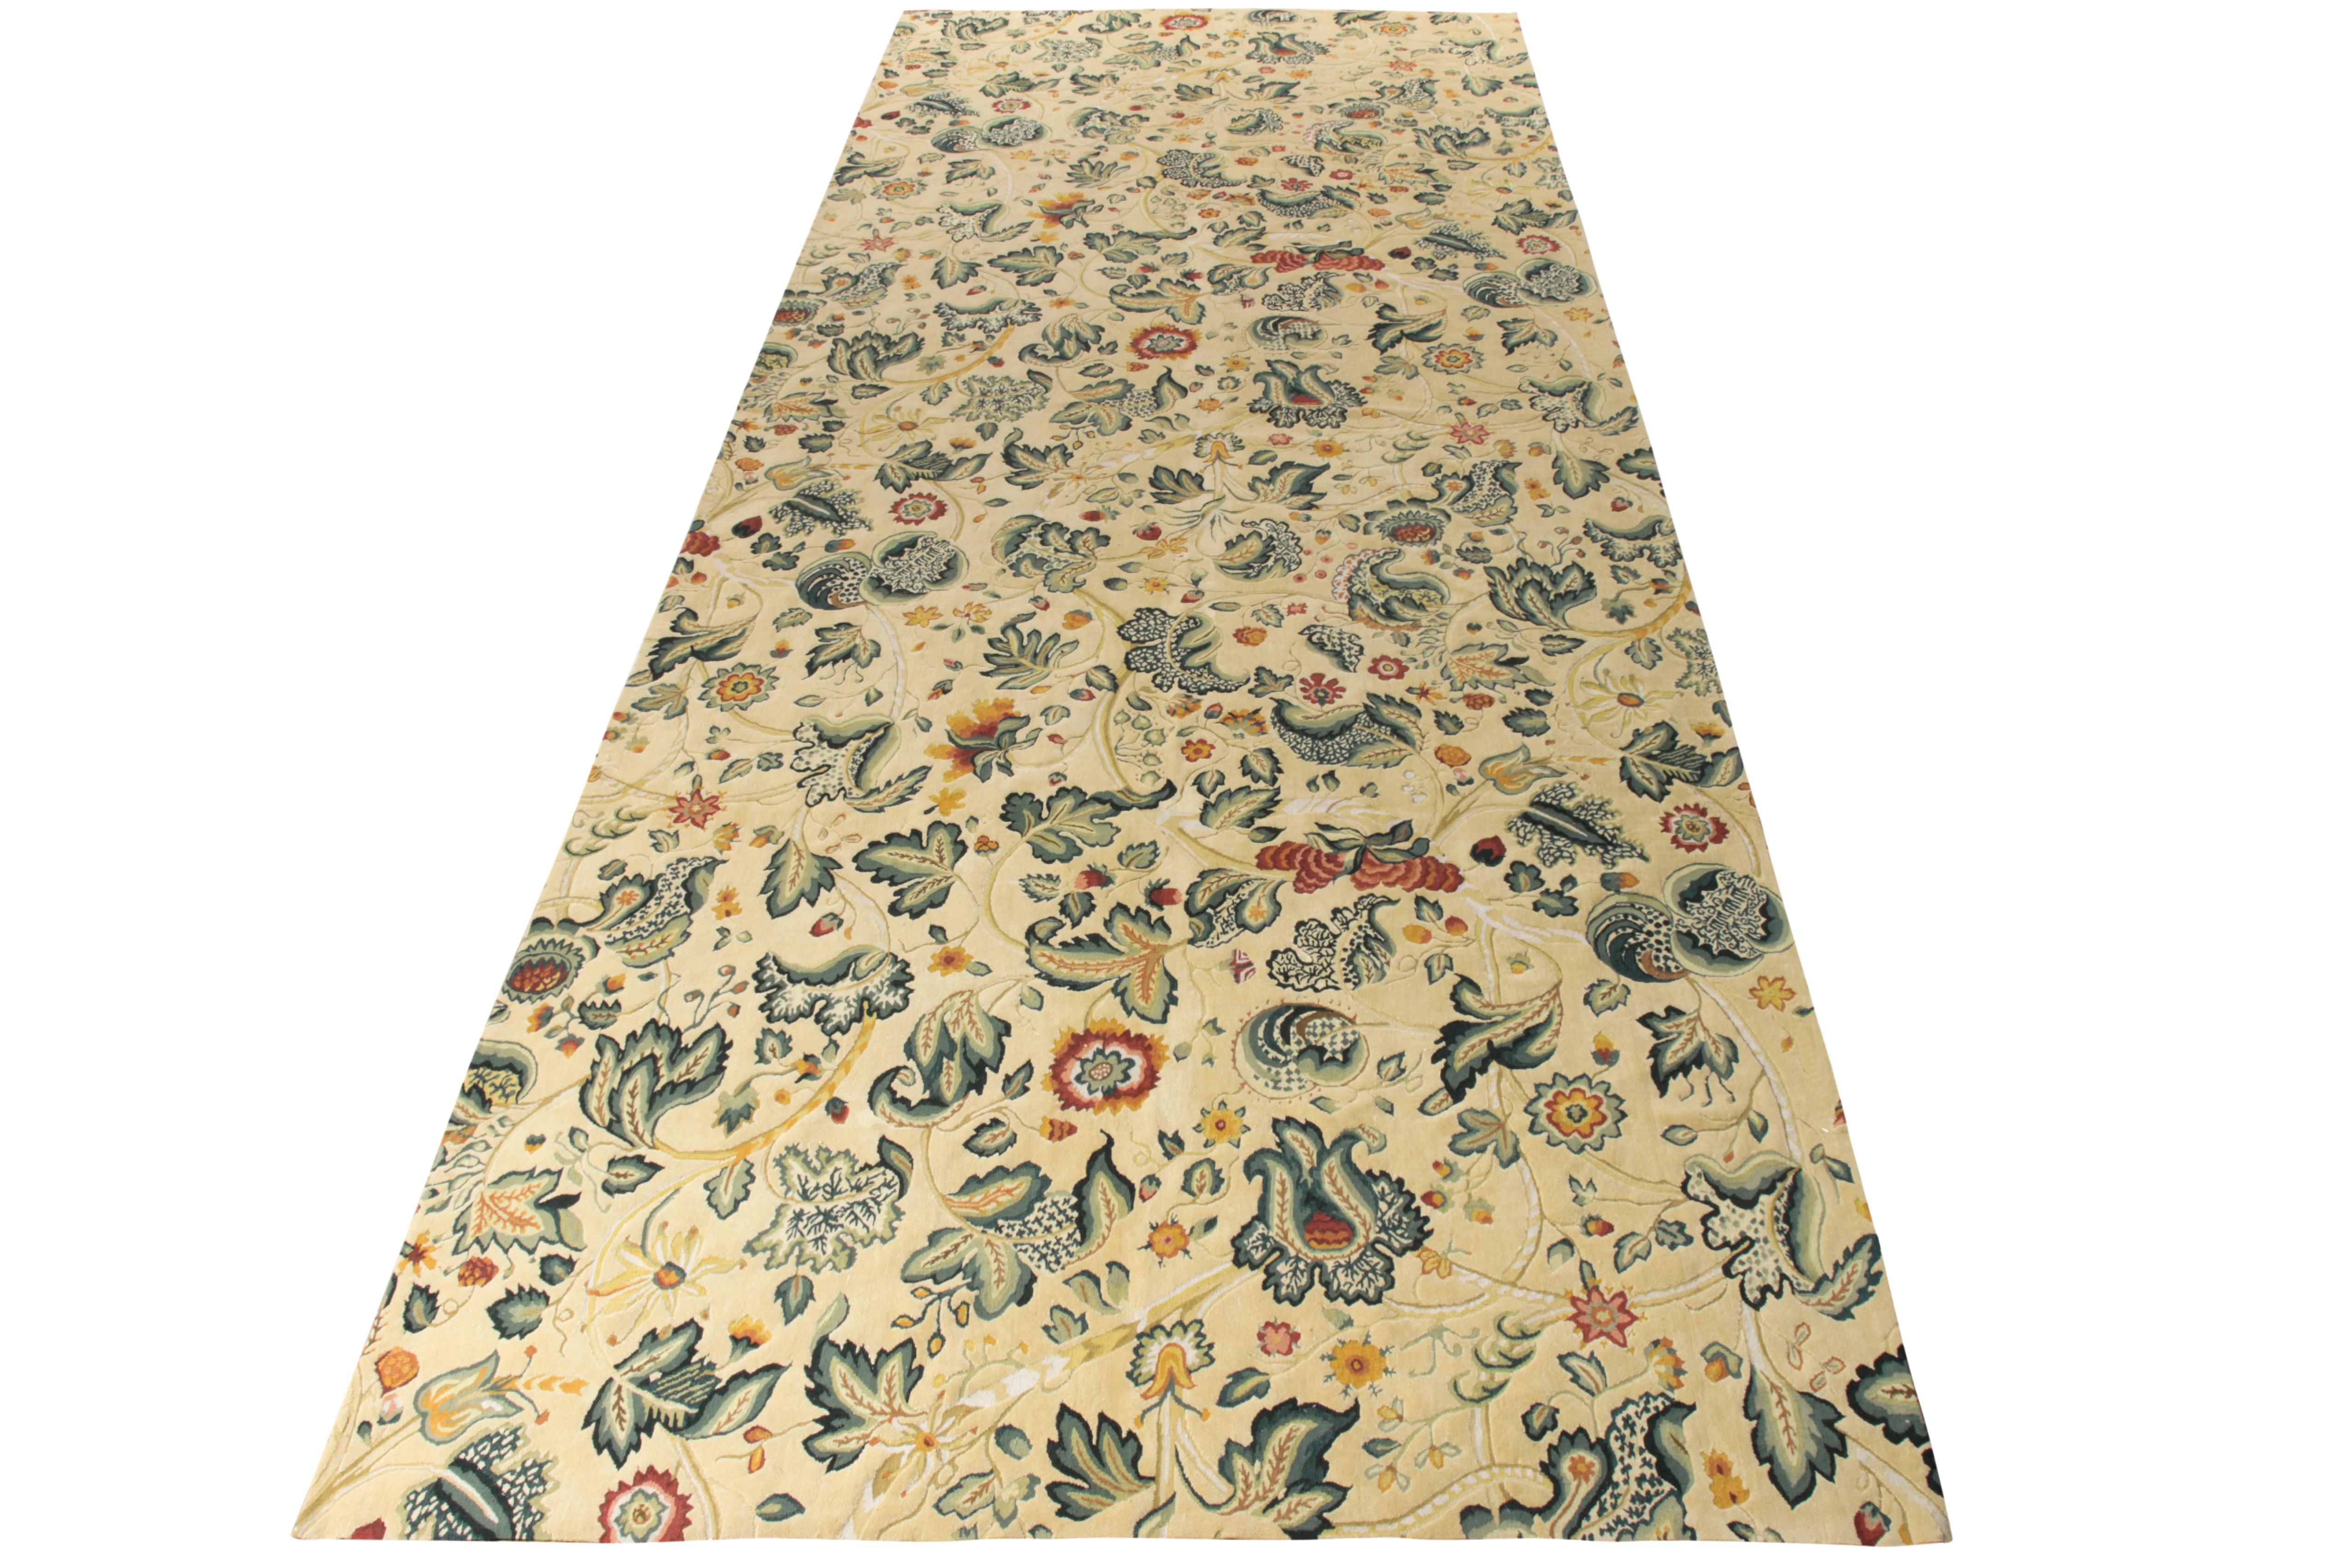 Noué à la main en laine, un tapis massif de style Tudor de la collection européenne de Rug & Kilim. Couvrant l'échelle 6x18 avec un motif floral sur toute la surface, le tapis se présente dans un style transitionnel anglais séduisant avec des tons